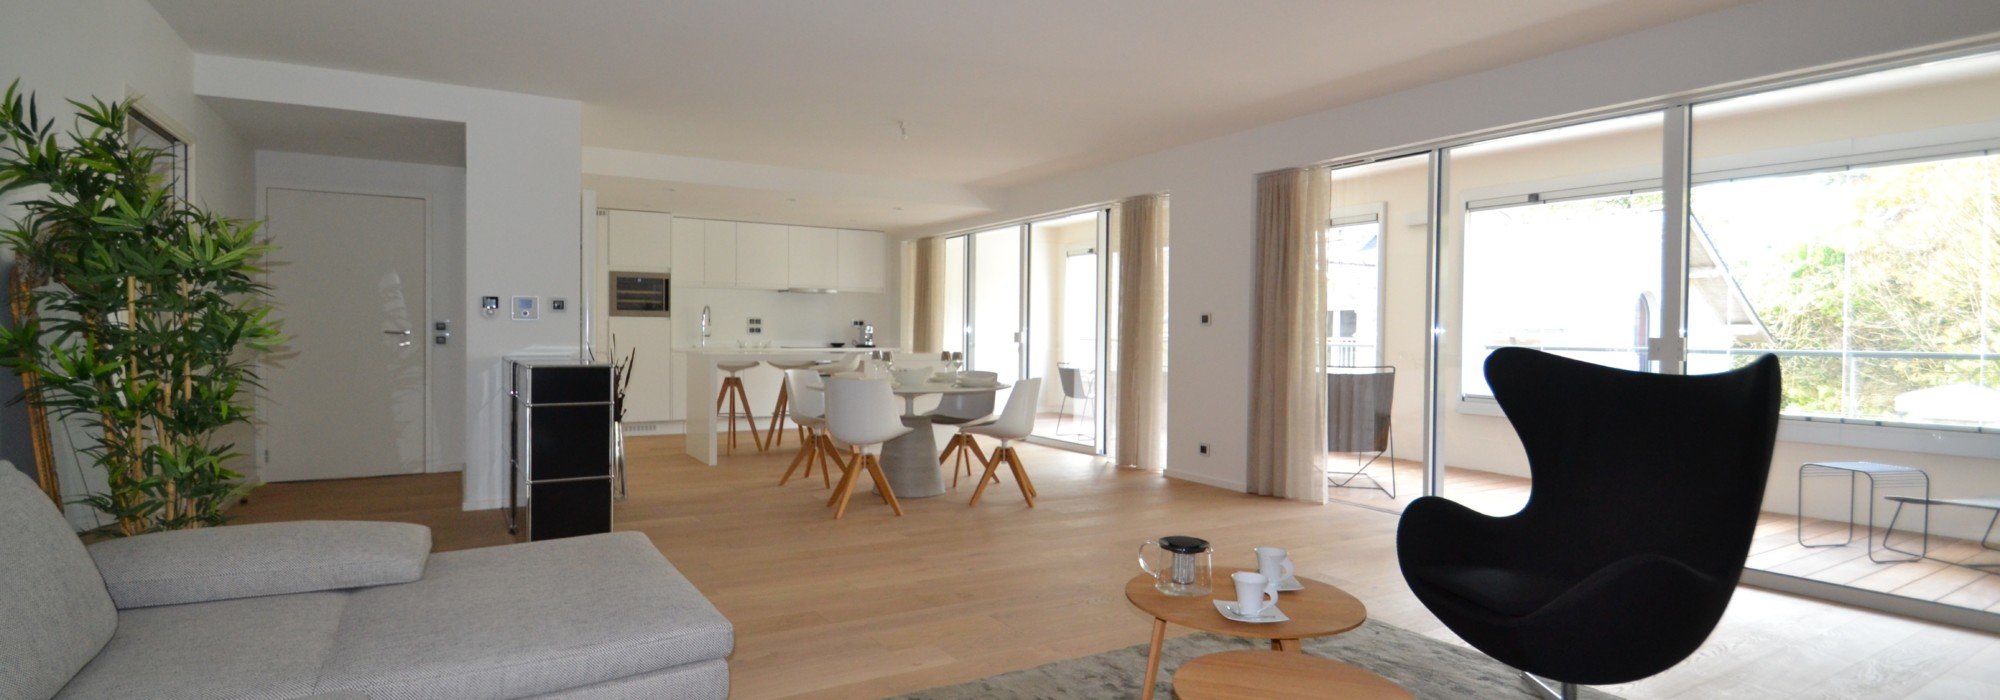 Appartement 86. 08 m² 4 pièces (4 pièces, 86 m²) Issy-les-Moulineaux